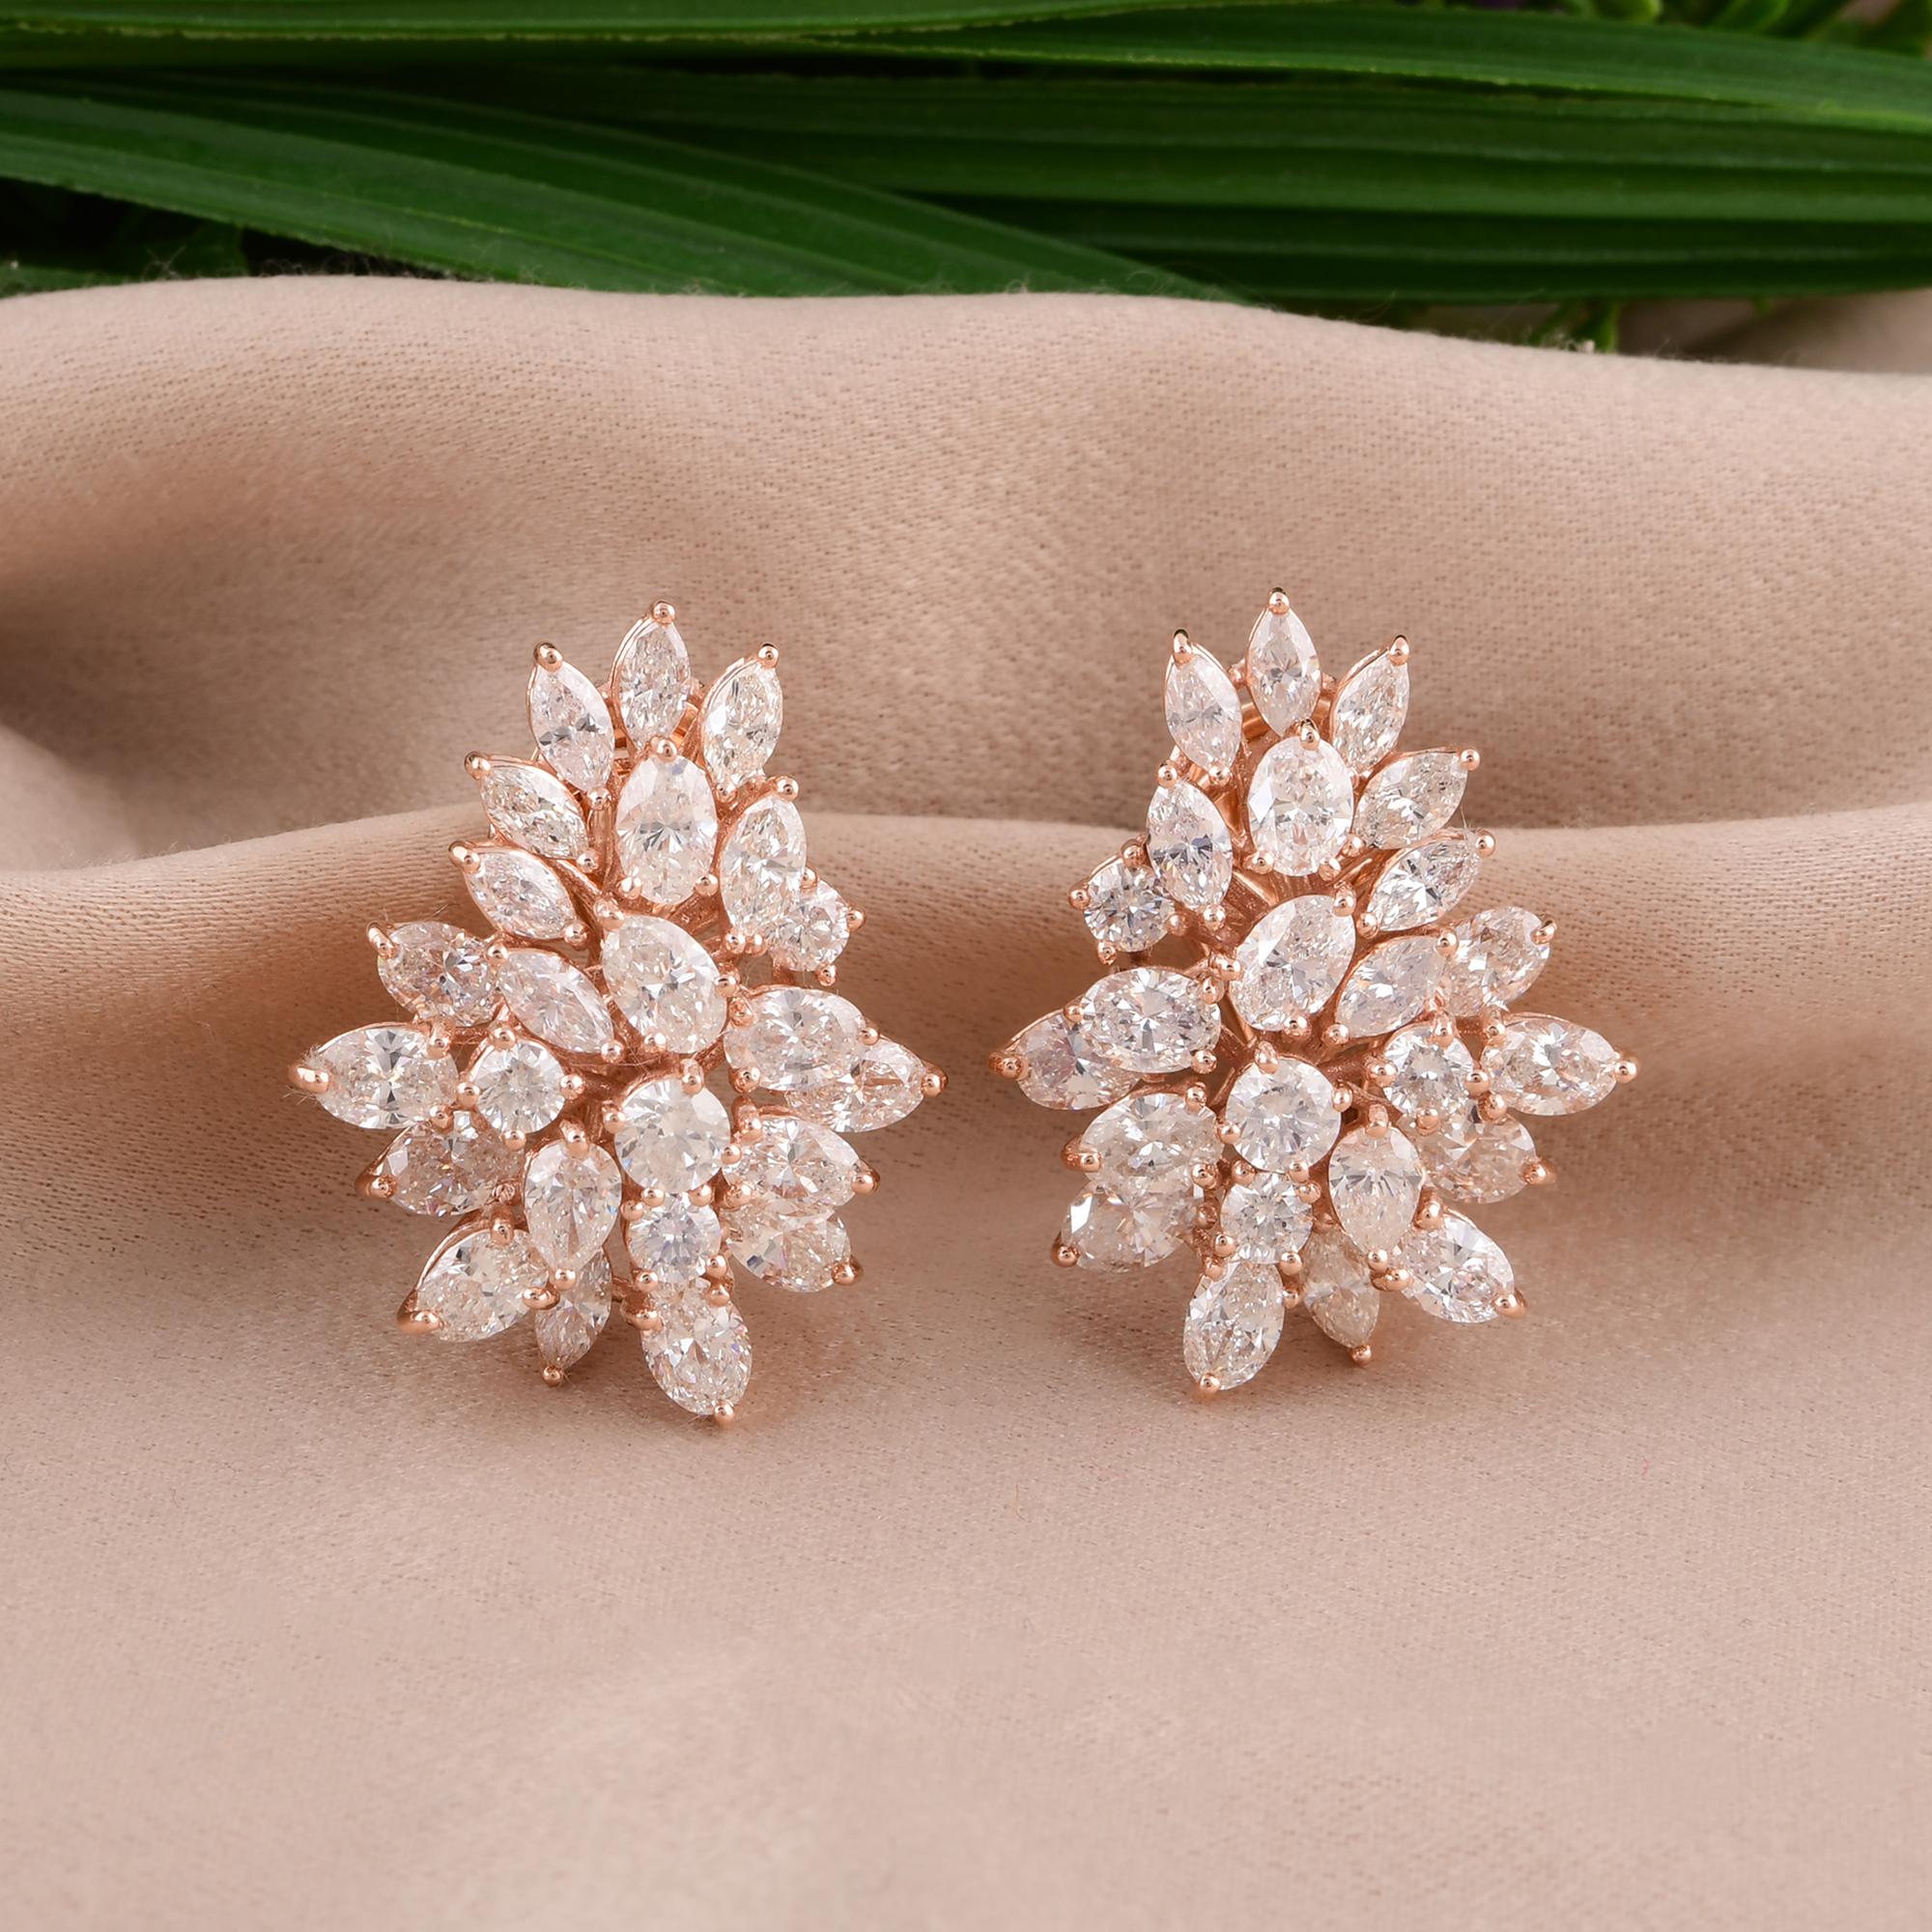 Lassen Sie sich von der exquisiten Schönheit dieser runden, marquisen und ovalen Diamantohrringe verzaubern, die in sorgfältiger Handarbeit aus luxuriösem 14-karätigem Roségold gefertigt wurden. Dieses atemberaubende Schmuckstück ist eine